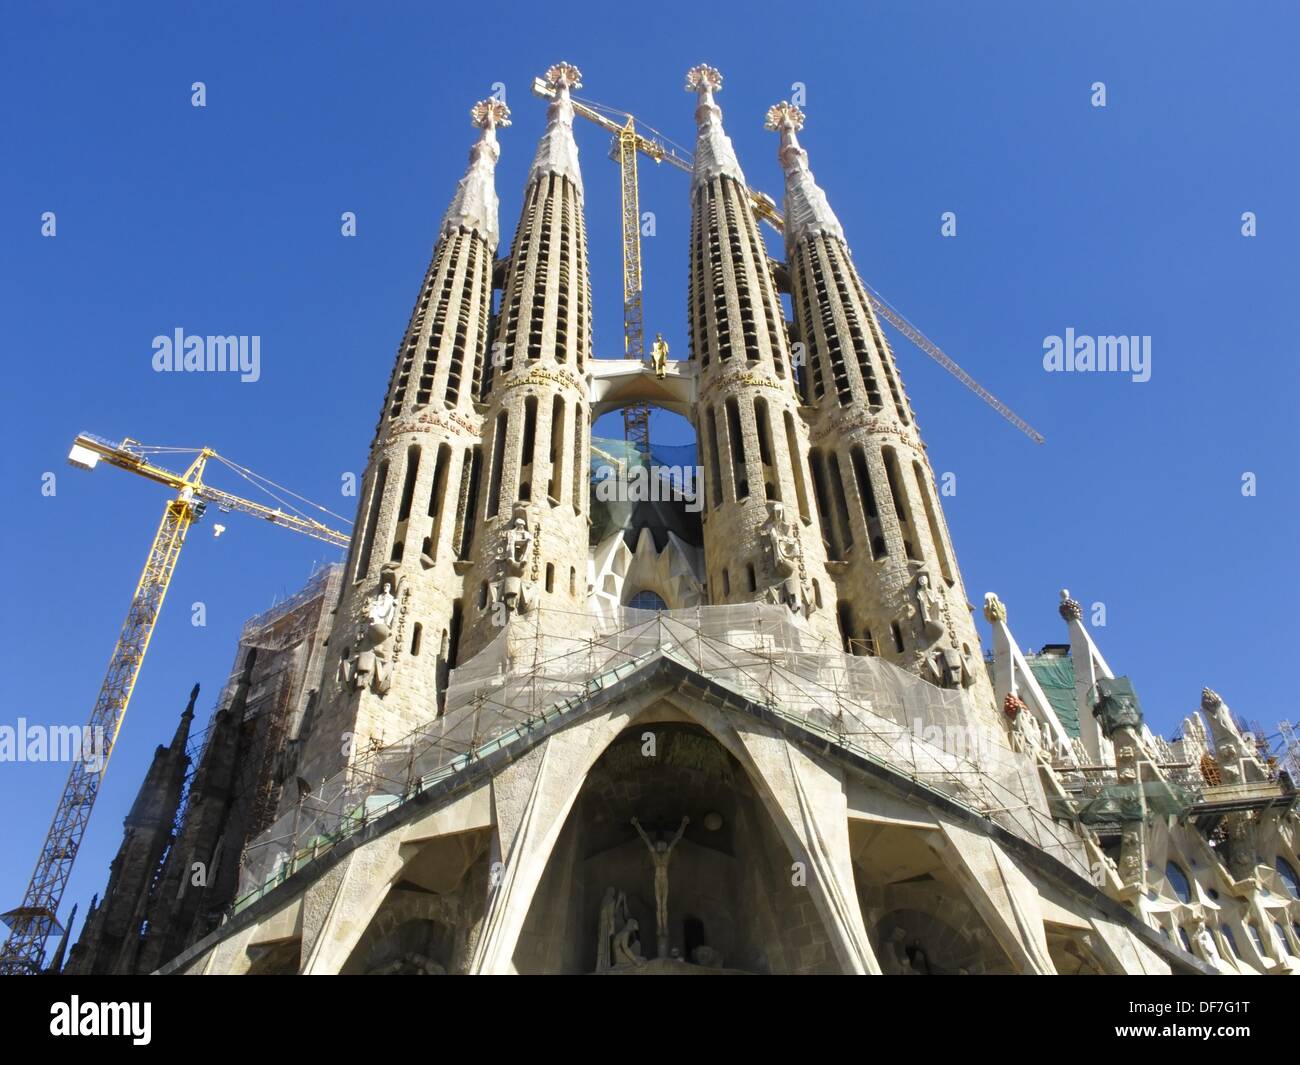 The Sagrada Familia Church by Antoni Gaudi in Barcelona Spain Stock ...